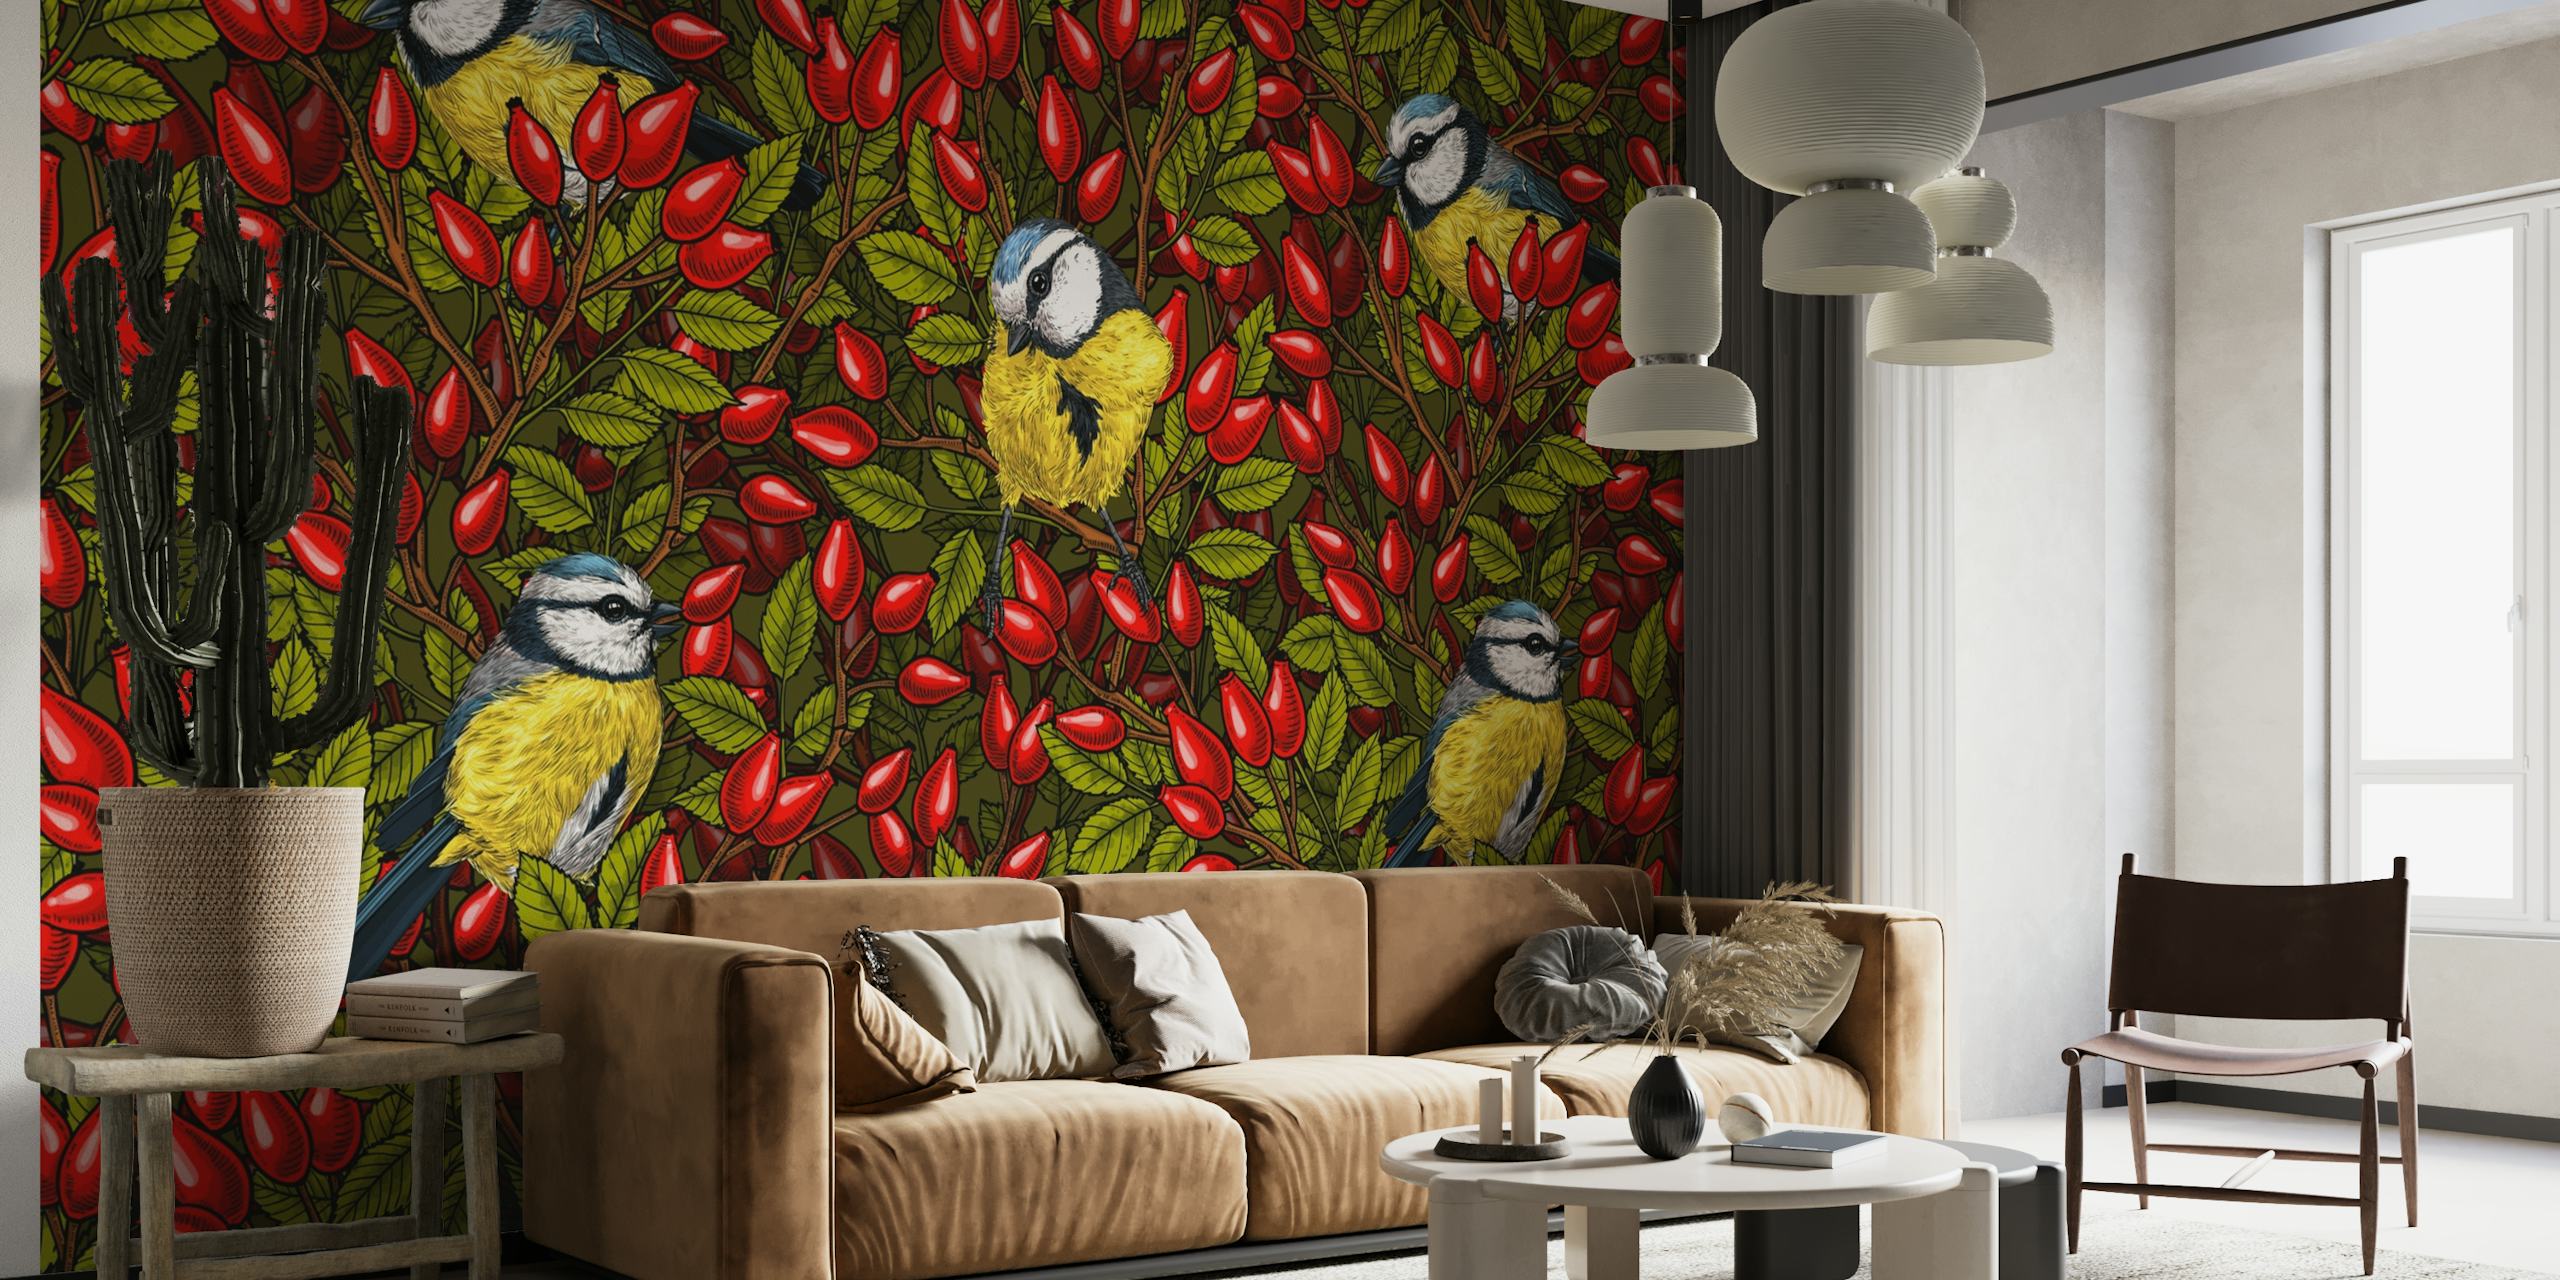 Fotomural vinílico de parede de pássaros coloridos e roseiras vermelhas